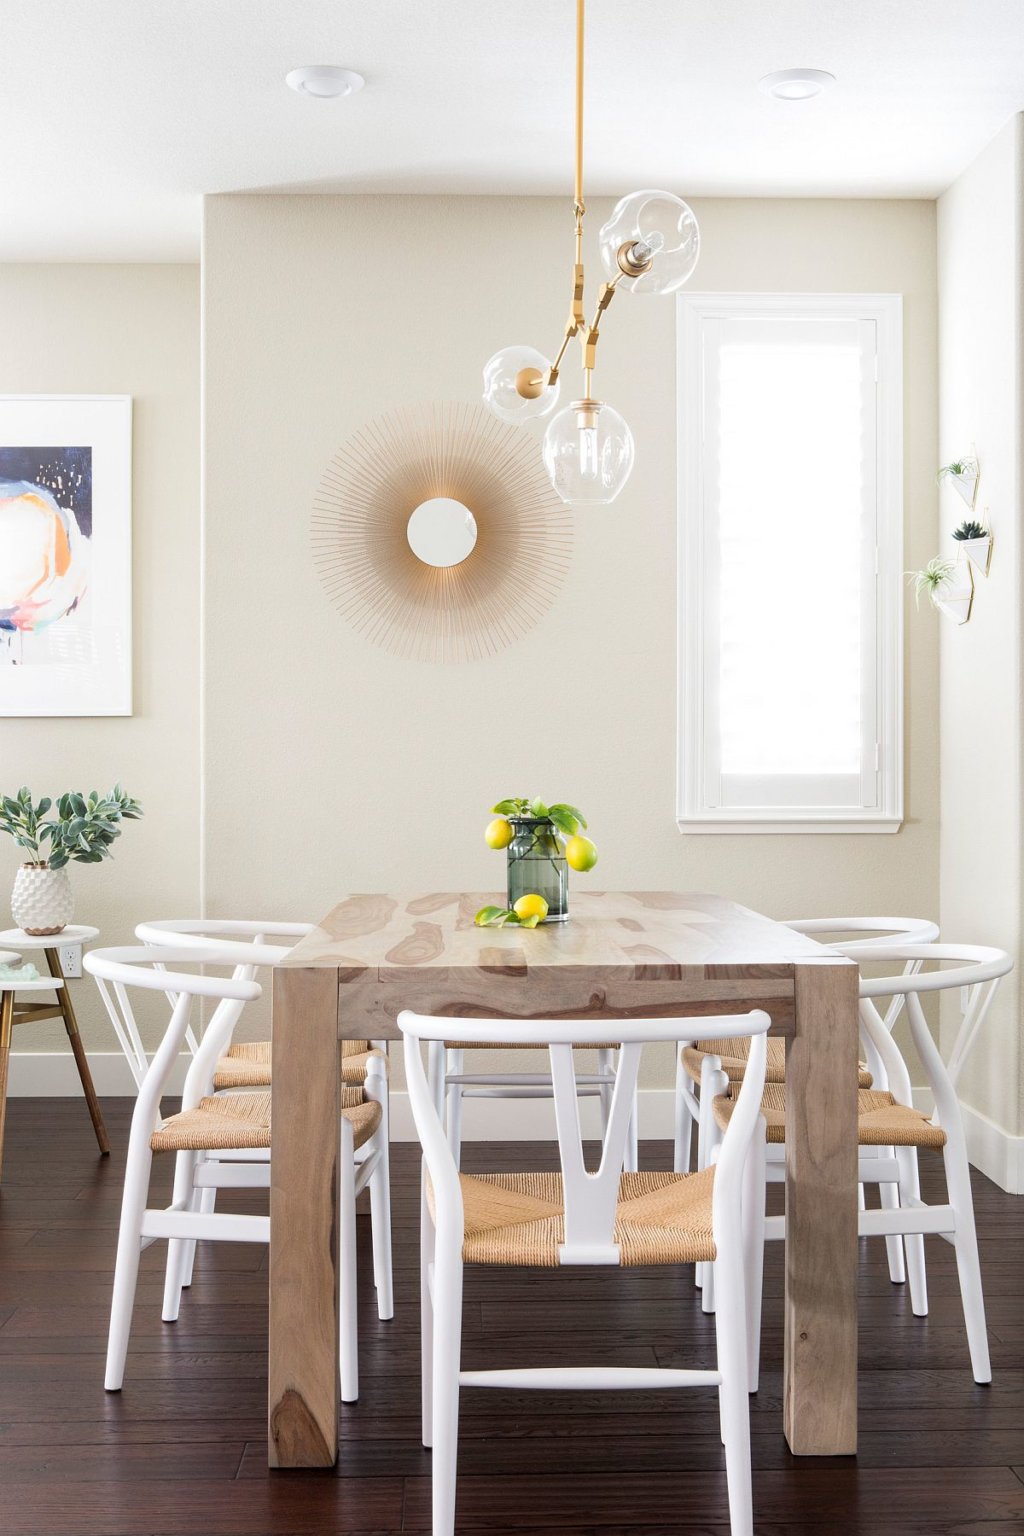 hình ảnh phòng ăn nhỏ phong cách bãi biển với bàn gỗ hình chữ nhật, ghế ngồi màu trắng, cây xanh tạo điểm nhấn